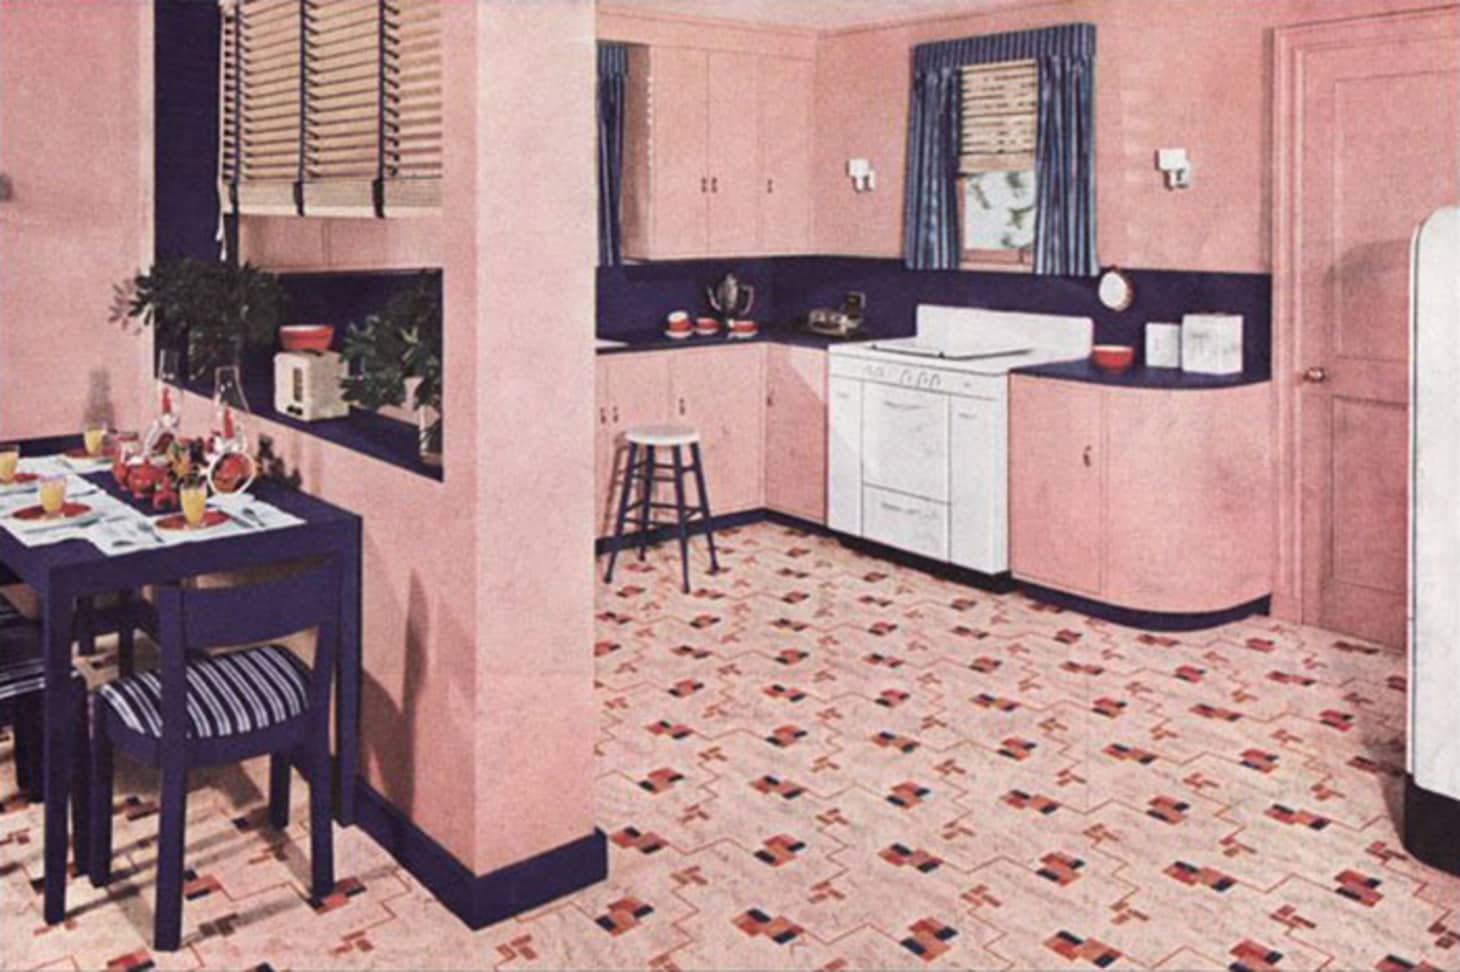 1930 kitchen design photos